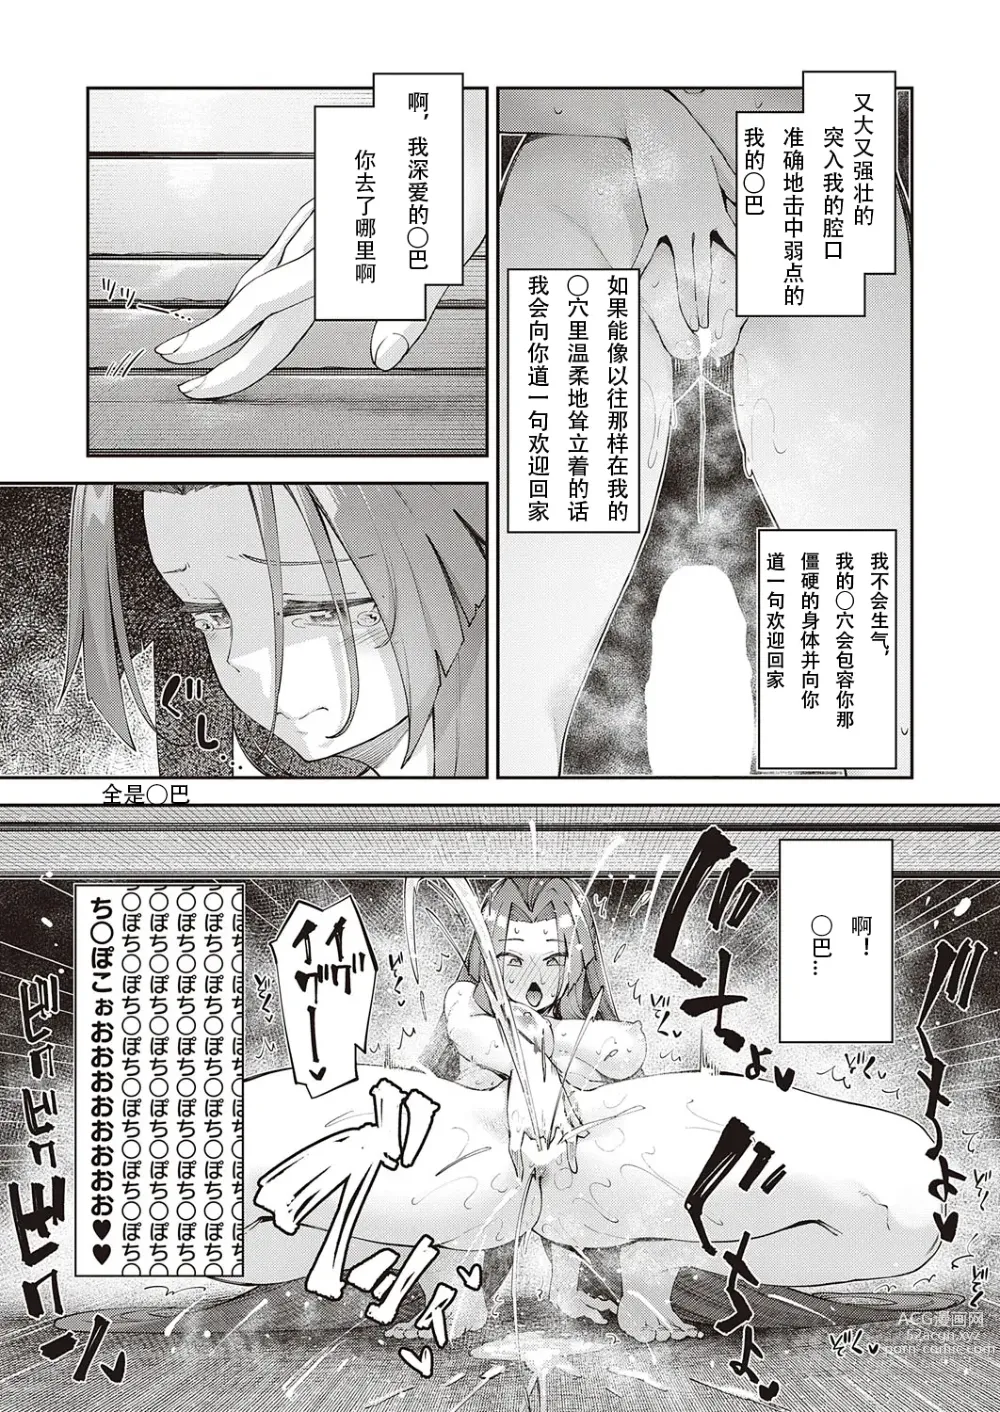 Page 19 of manga 既然来了异世界就用色批技能来全力讴歌 第8枪